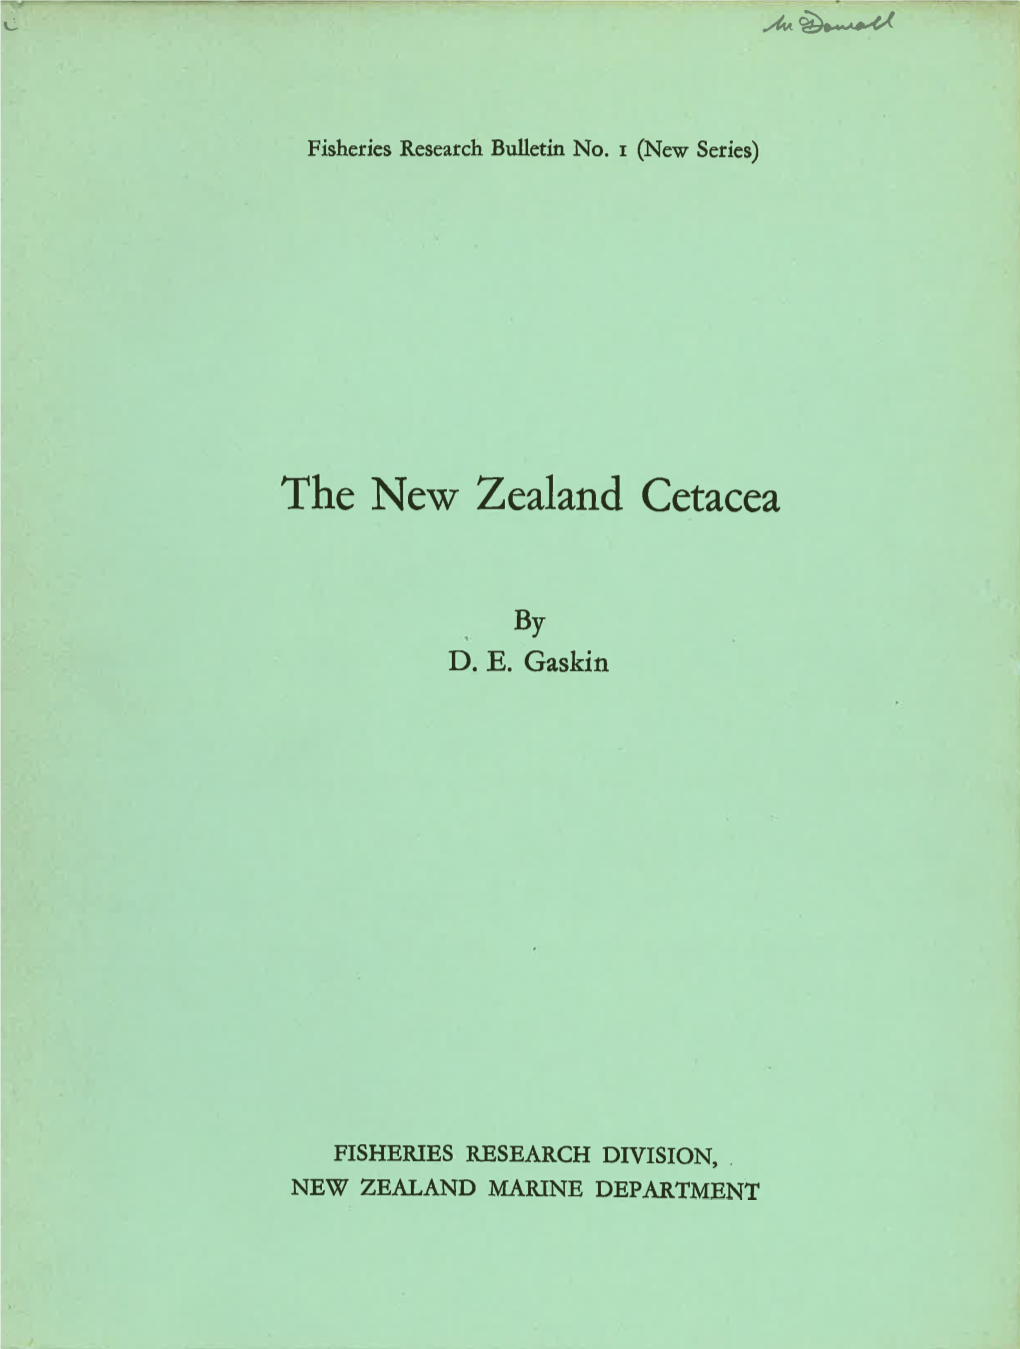 The New Zealand Cetacea